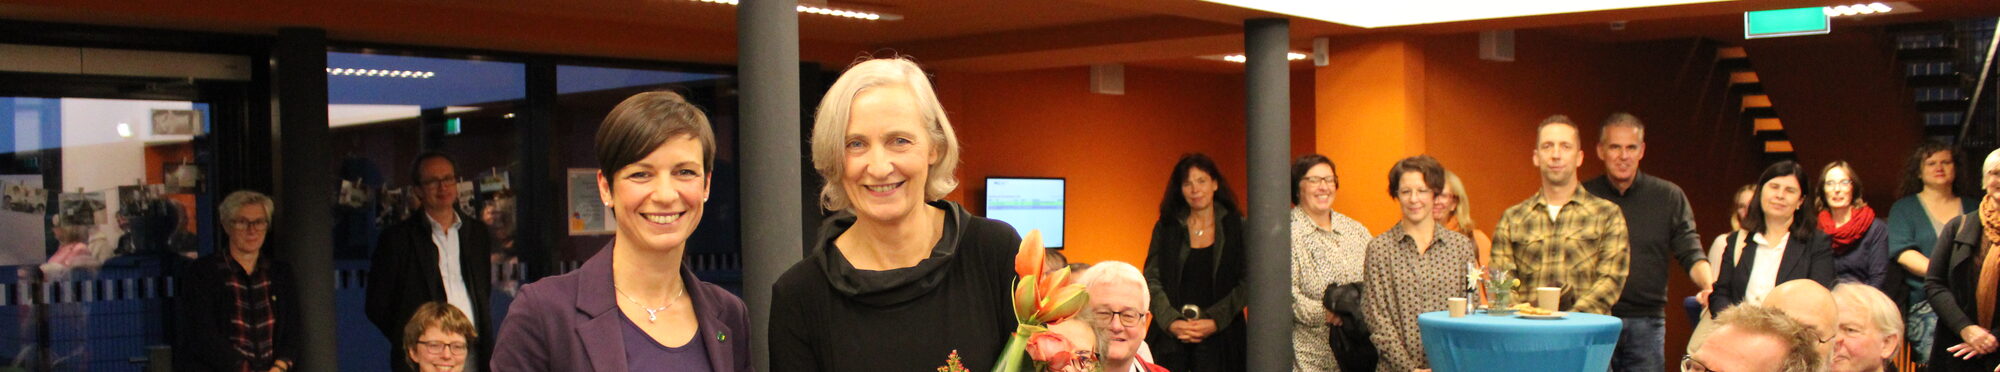 Carolin Weitzel verabschiedet Gudrun Mittelstedt. Diese hat einen Blumenstrauß in der Hand.